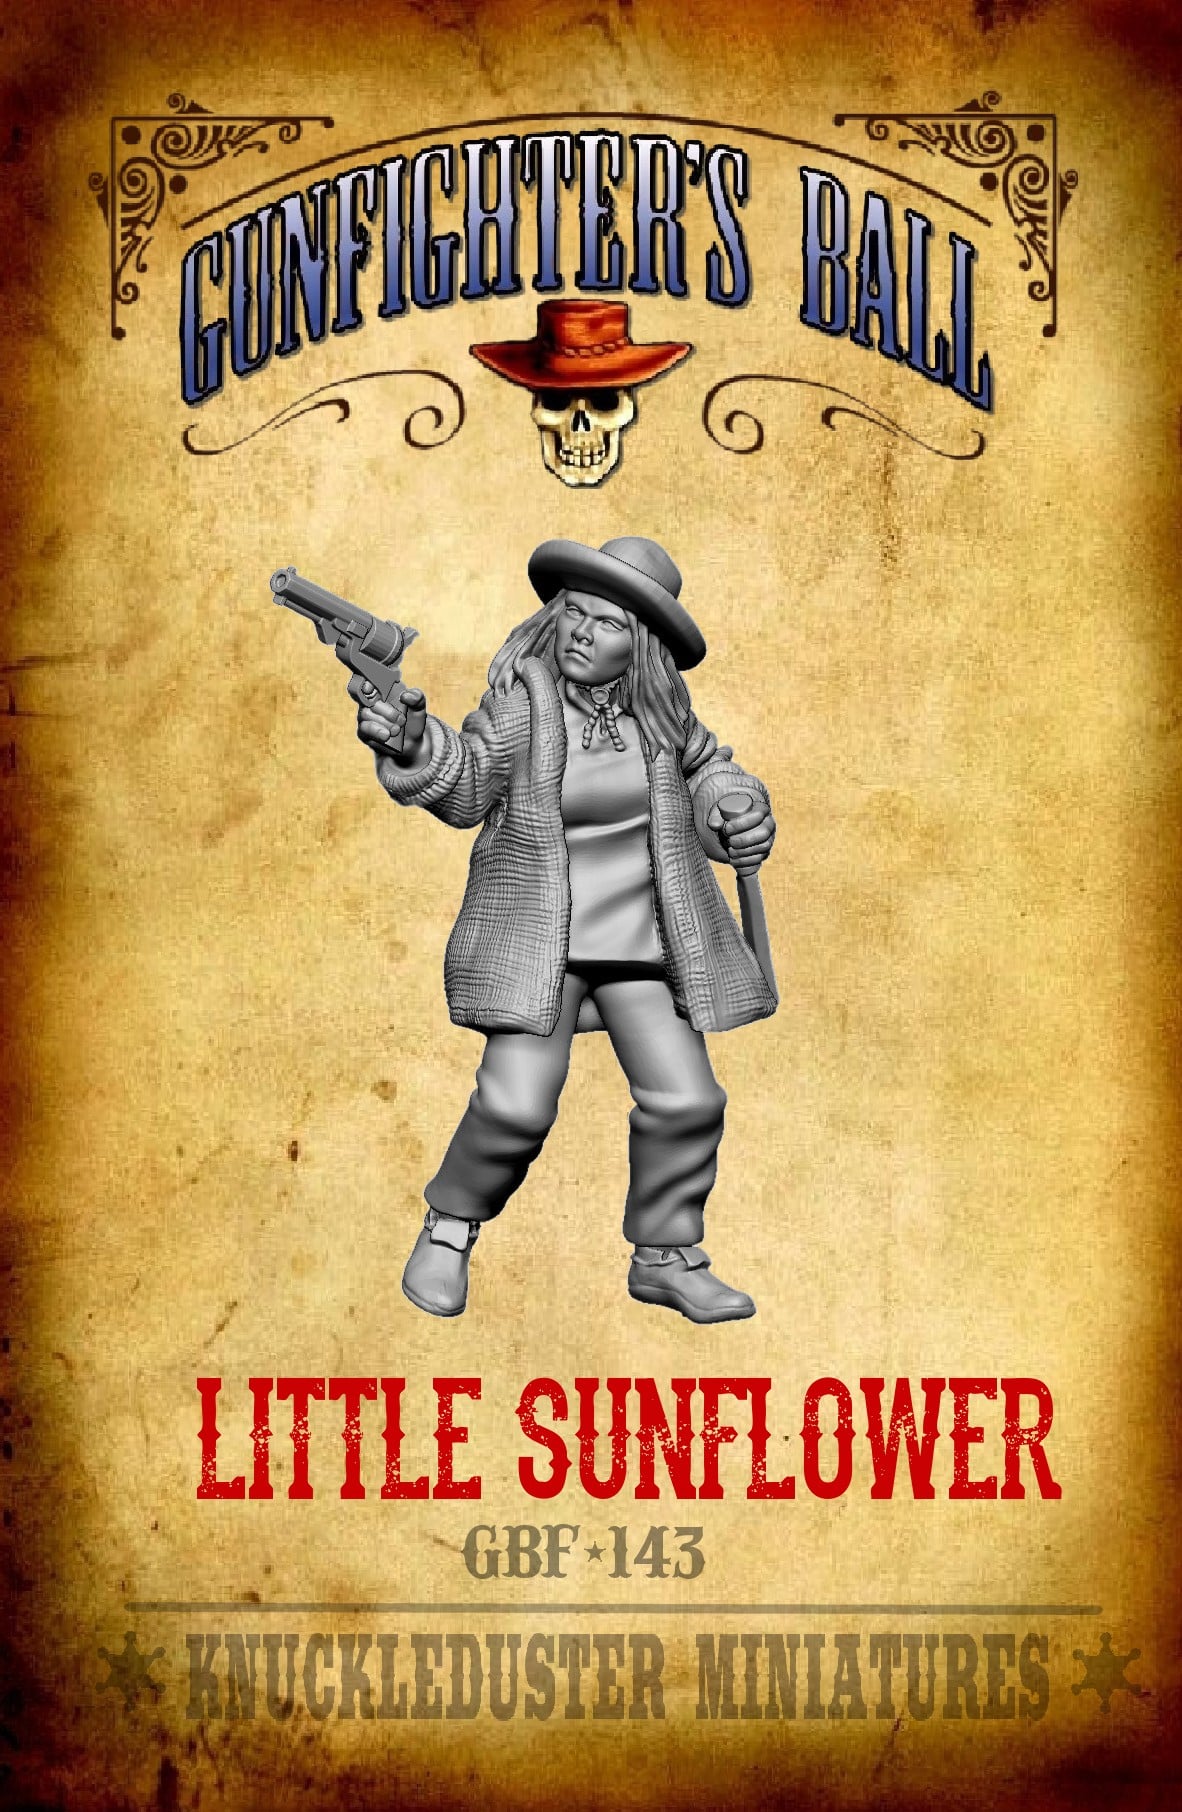 Little Sunflower - Gunfighters Ball